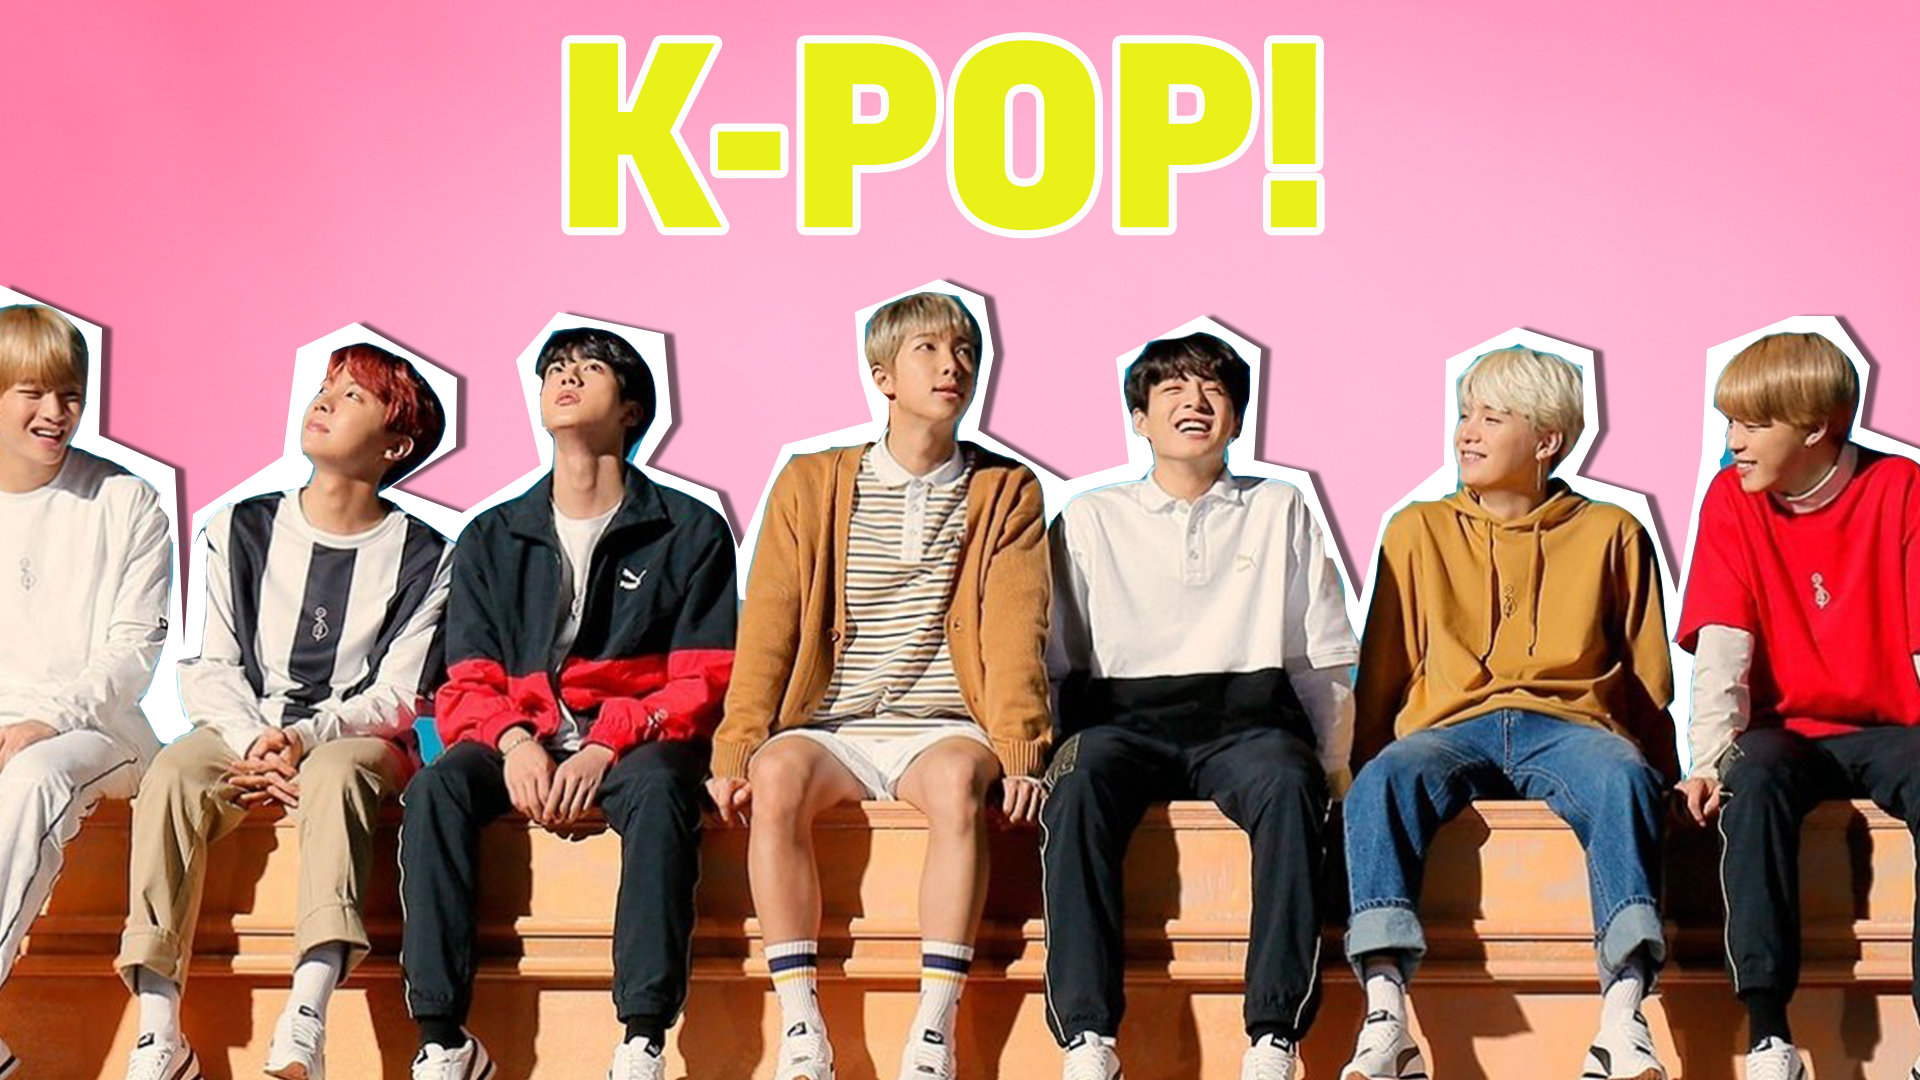 K-pop band BTS